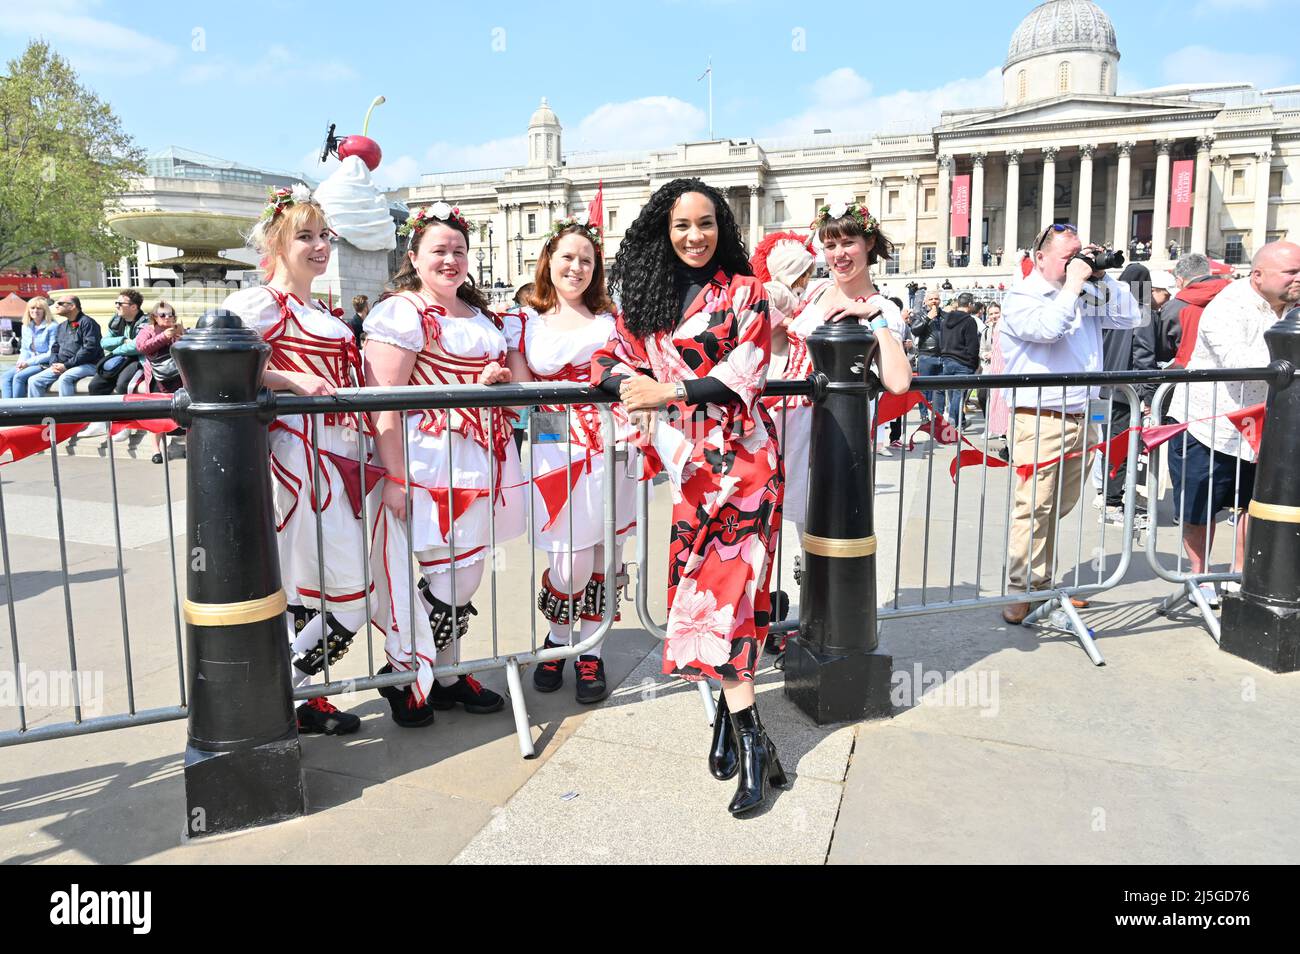 Michelle Ackerley, présentatrice aux célébrations de la St George à Trafalgar Square, Londres, Royaume-Uni. - 23 avril 2022. Banque D'Images